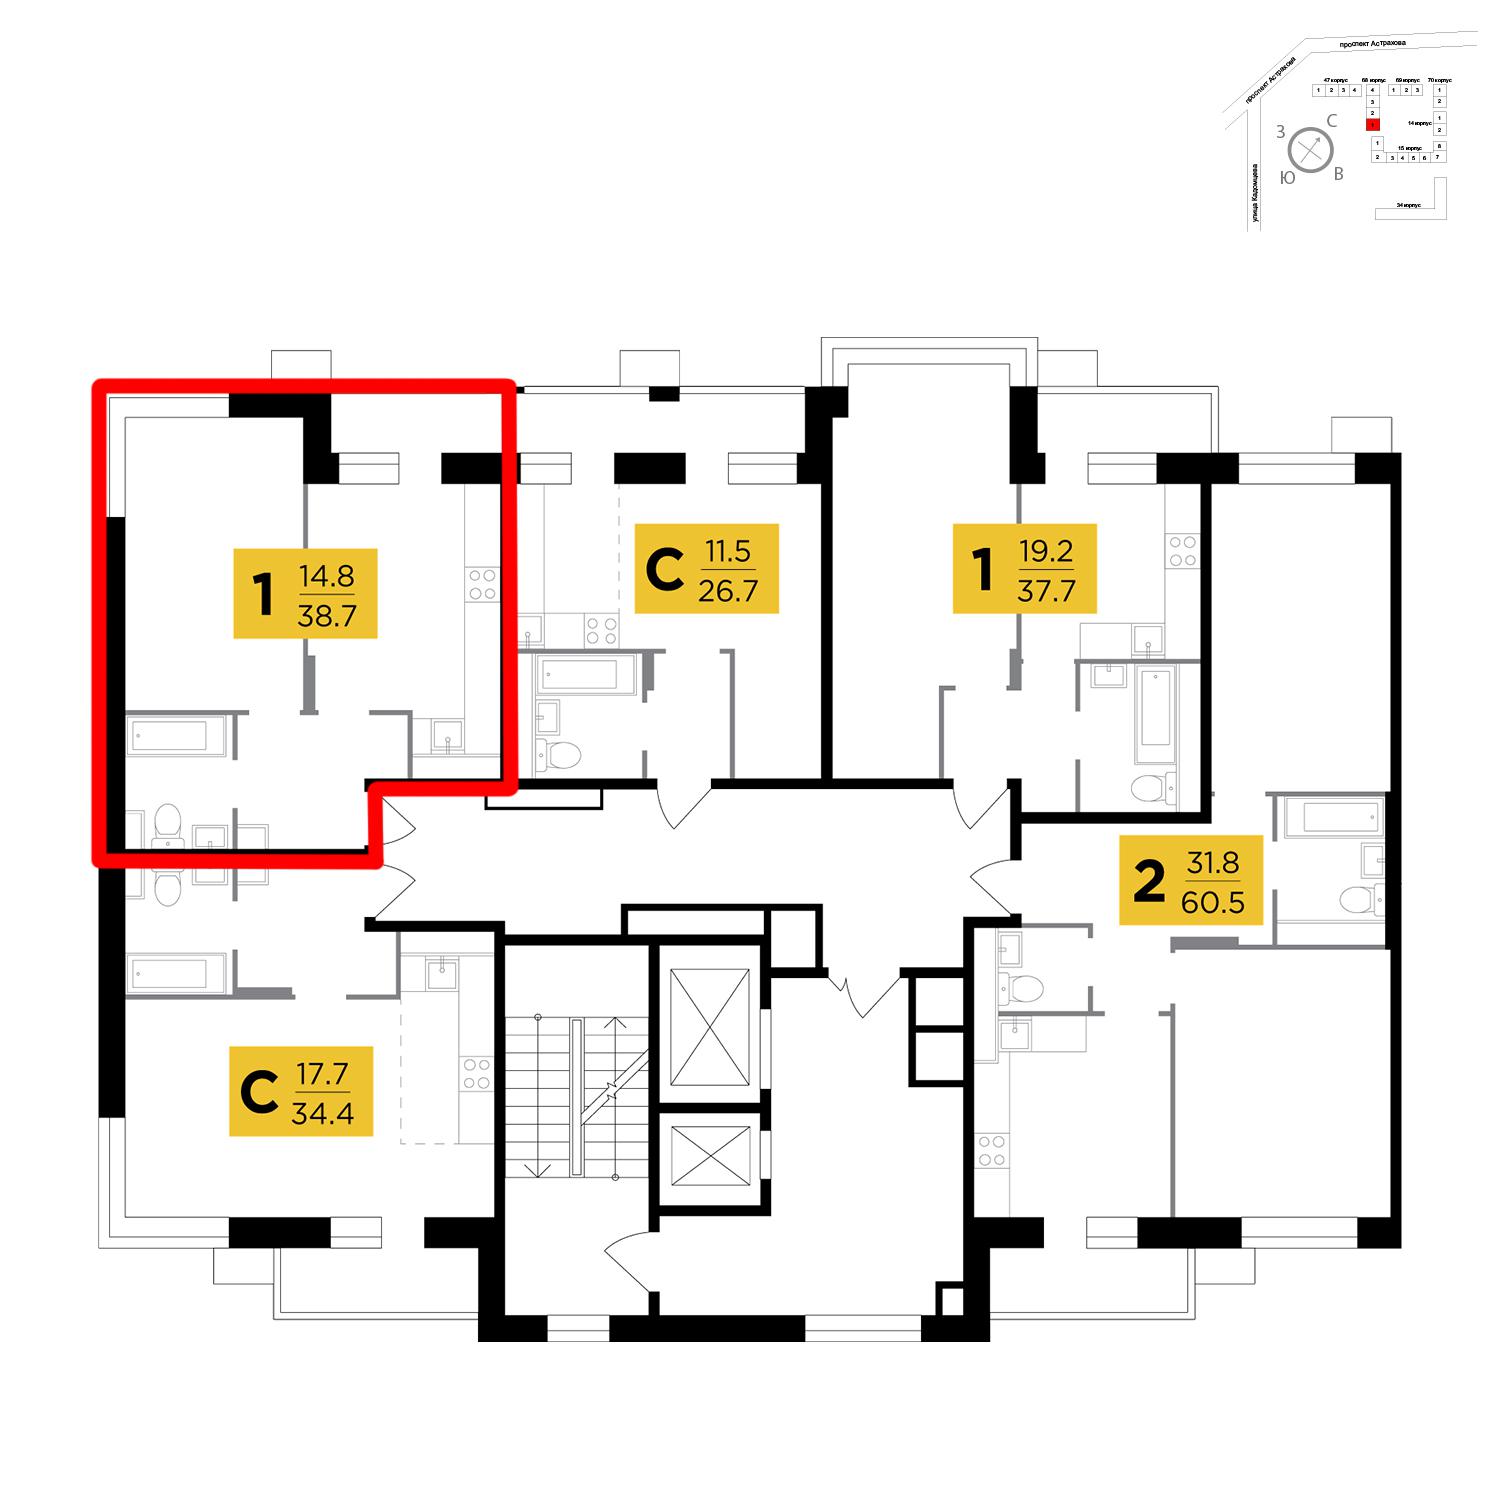 Продаётся 1-комнатная квартира в новостройке 38.7 кв.м. этаж 6/17 за 4 009 320 руб 